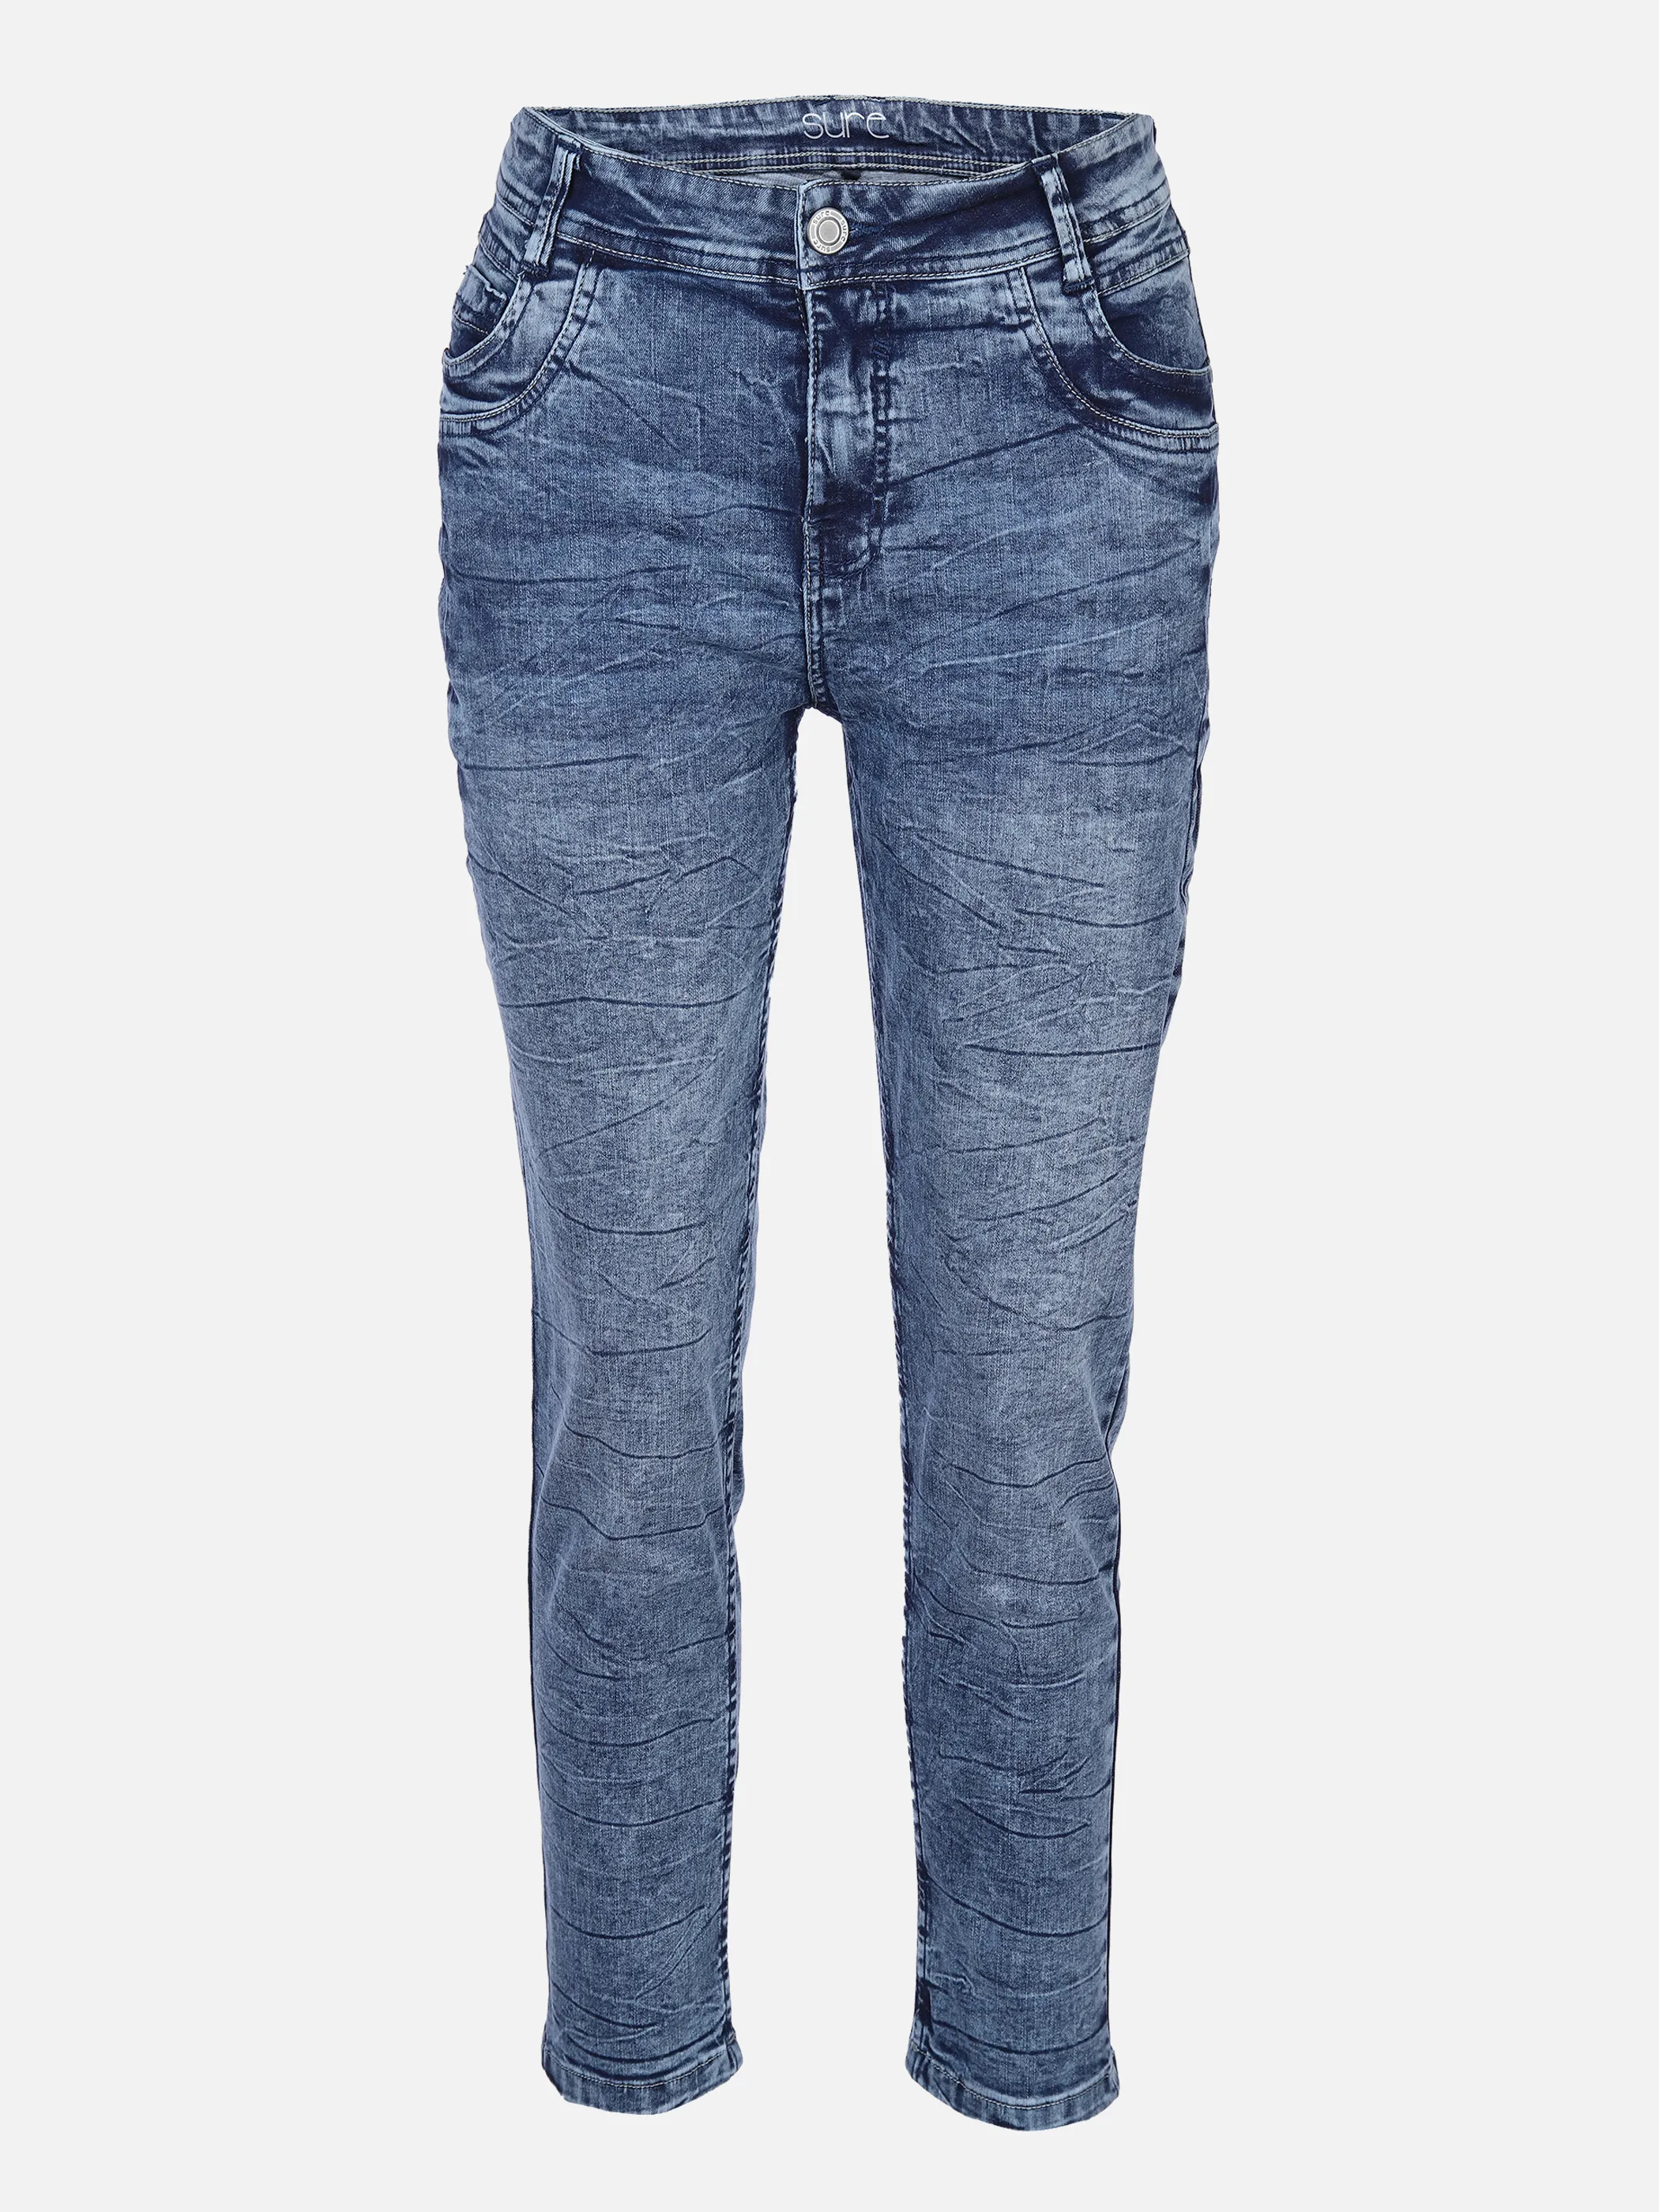 Sure Da-Jeans 5 Pocket commercial w Blau 871646 DK. BLUE 1